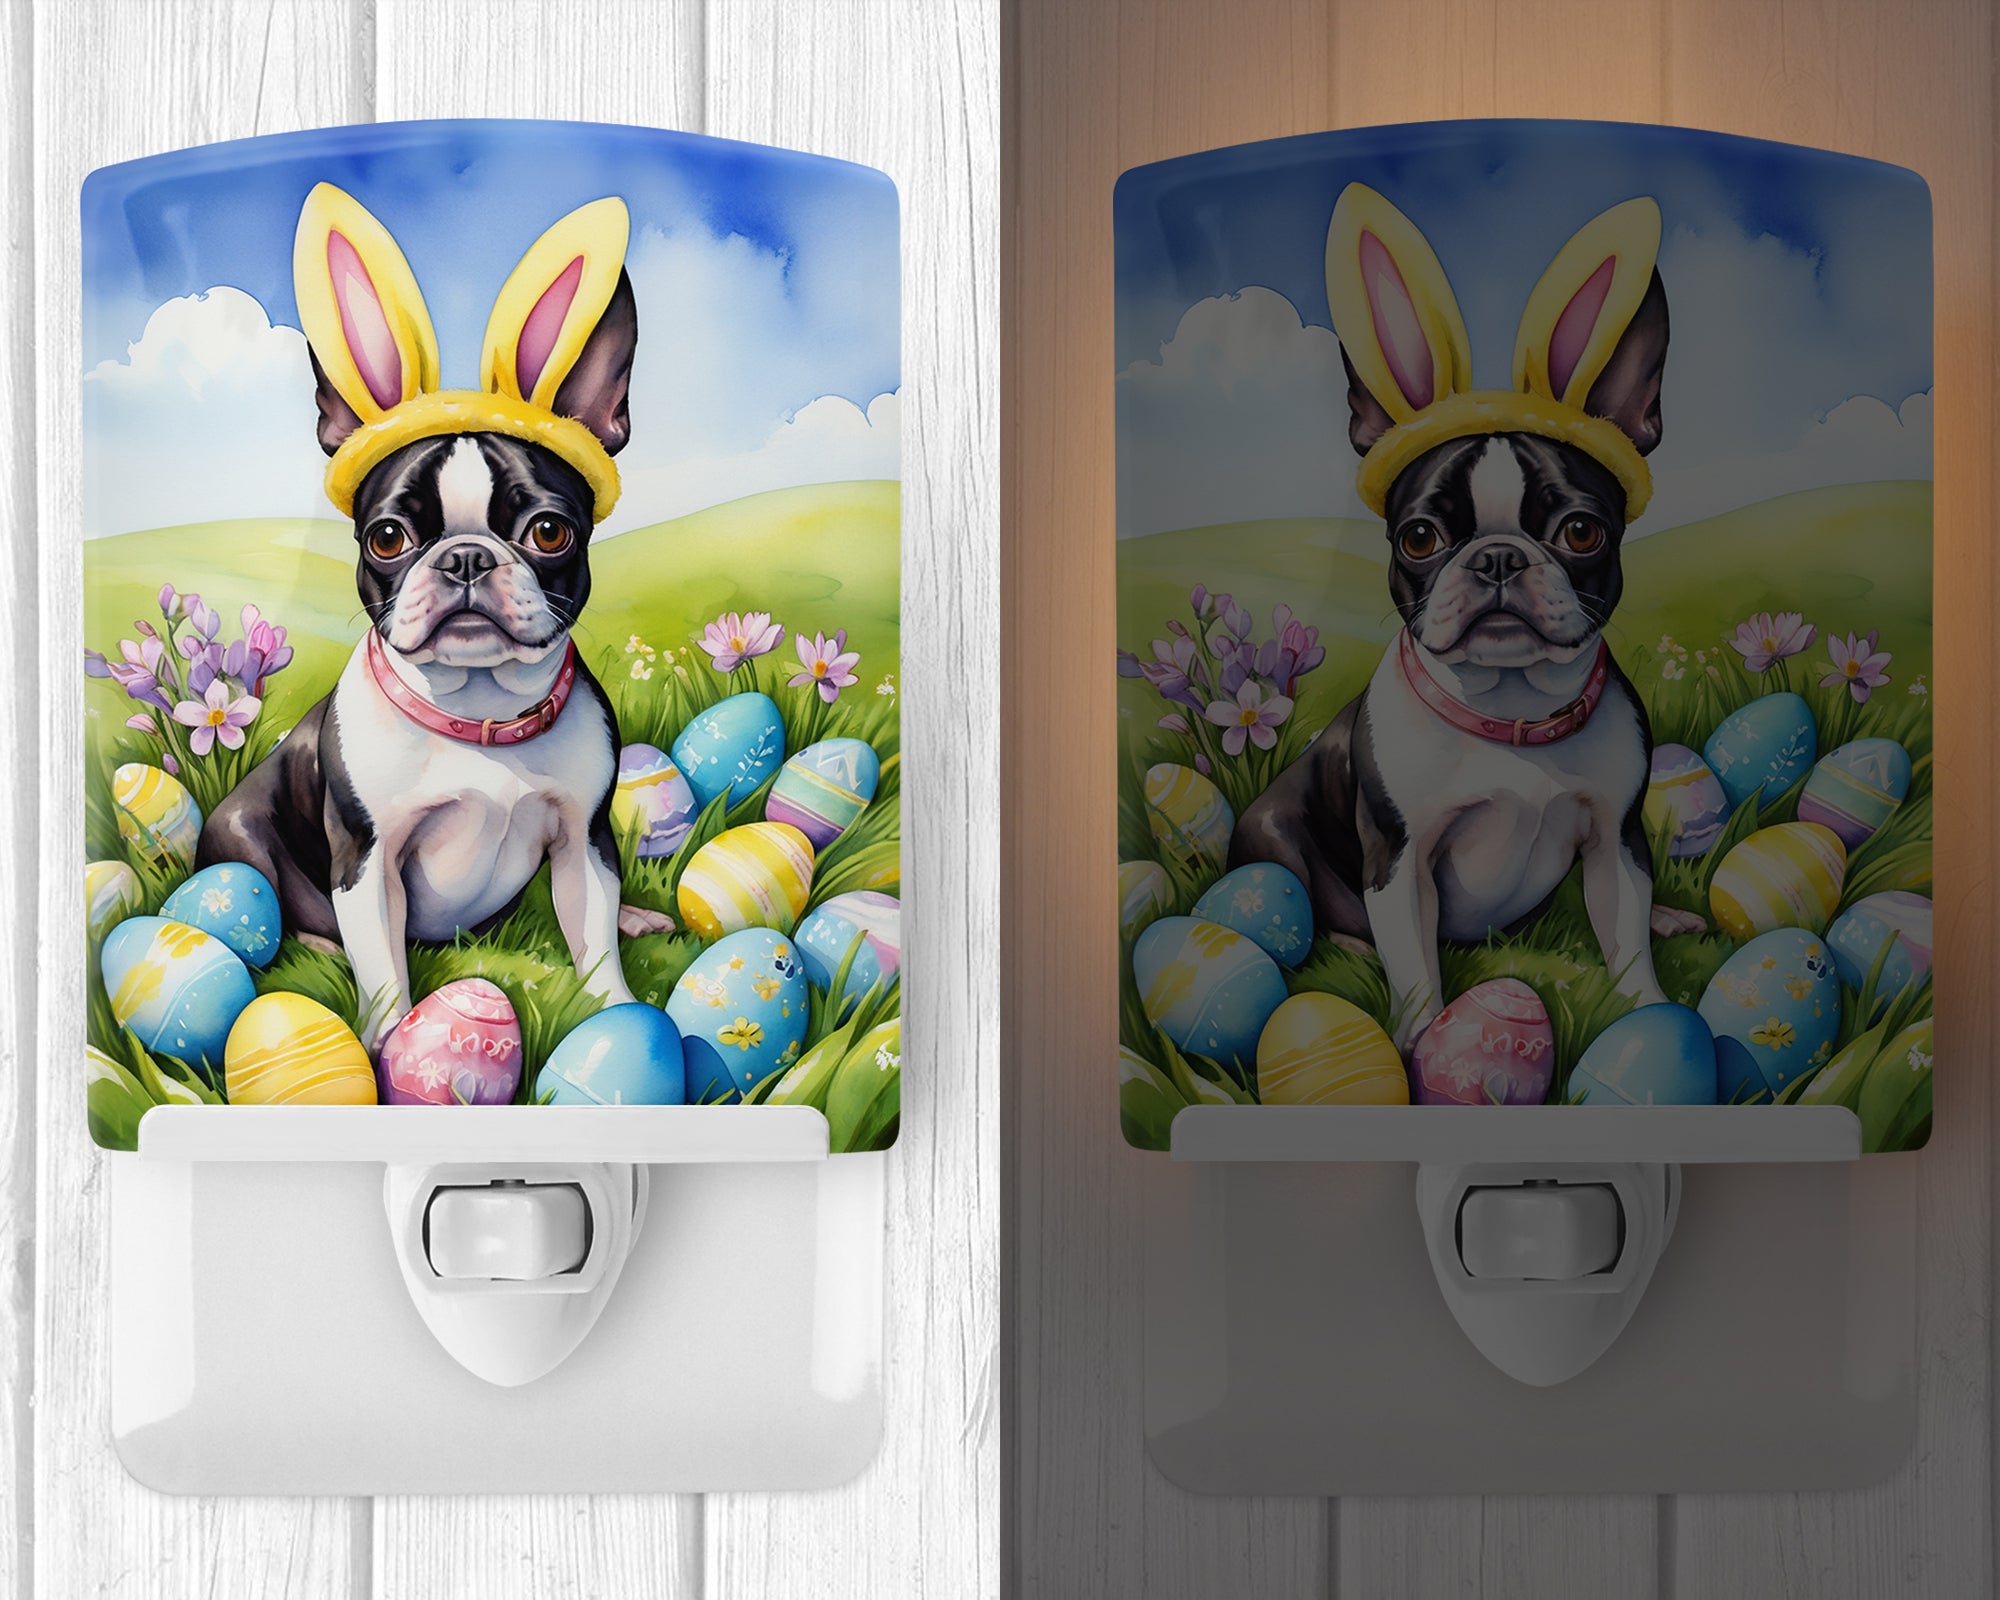 Boston Terrier Easter Egg Hunt Ceramic Night Light